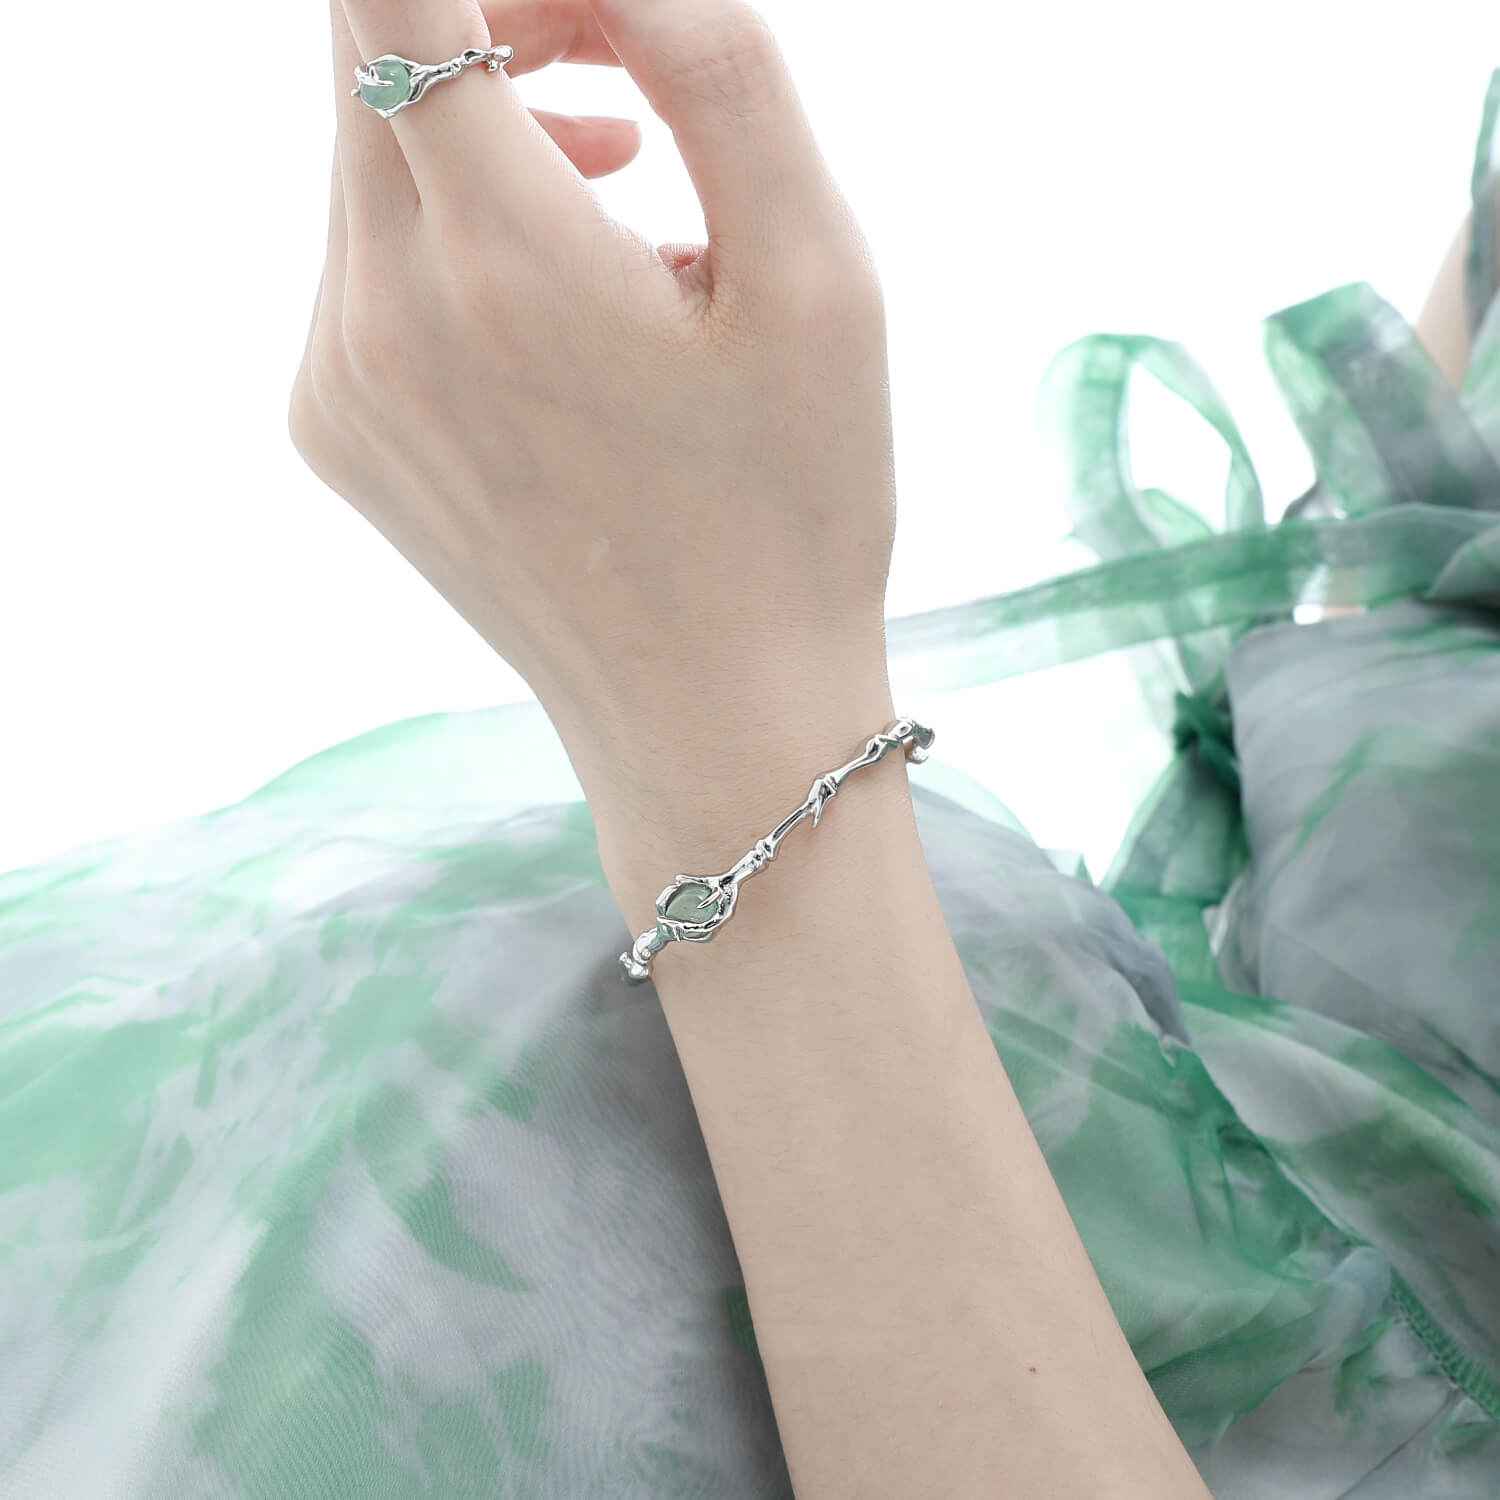 Serene Silver Aventurine Jade Bangle Bracelet  Buy at Khanie